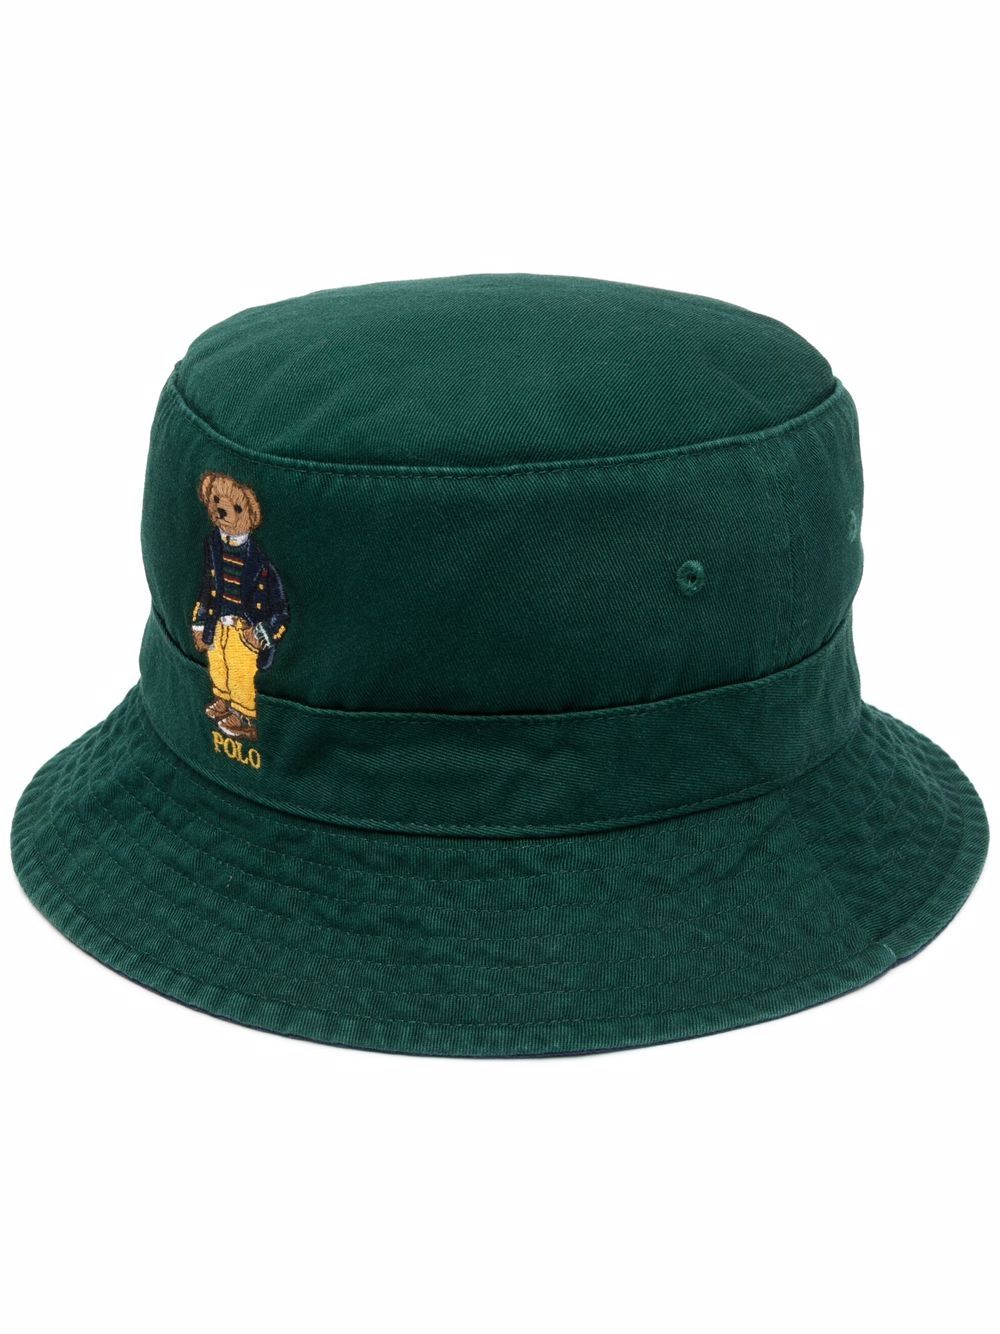 Polo Ralph Lauren Polo Bear Bucket Hat - Farfetch